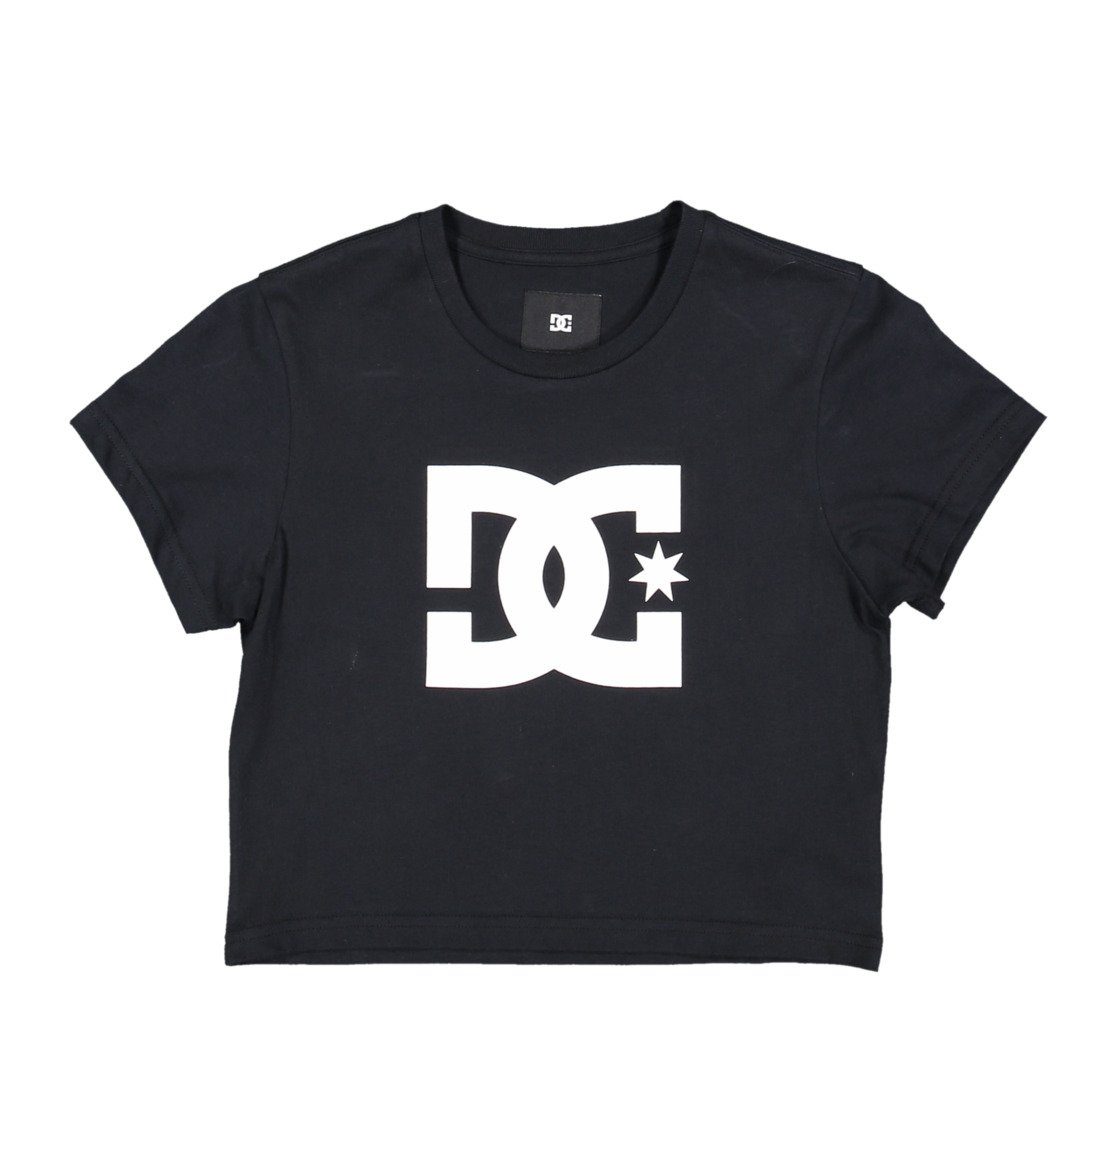 DC DC Star T-Shirt Black Shoes